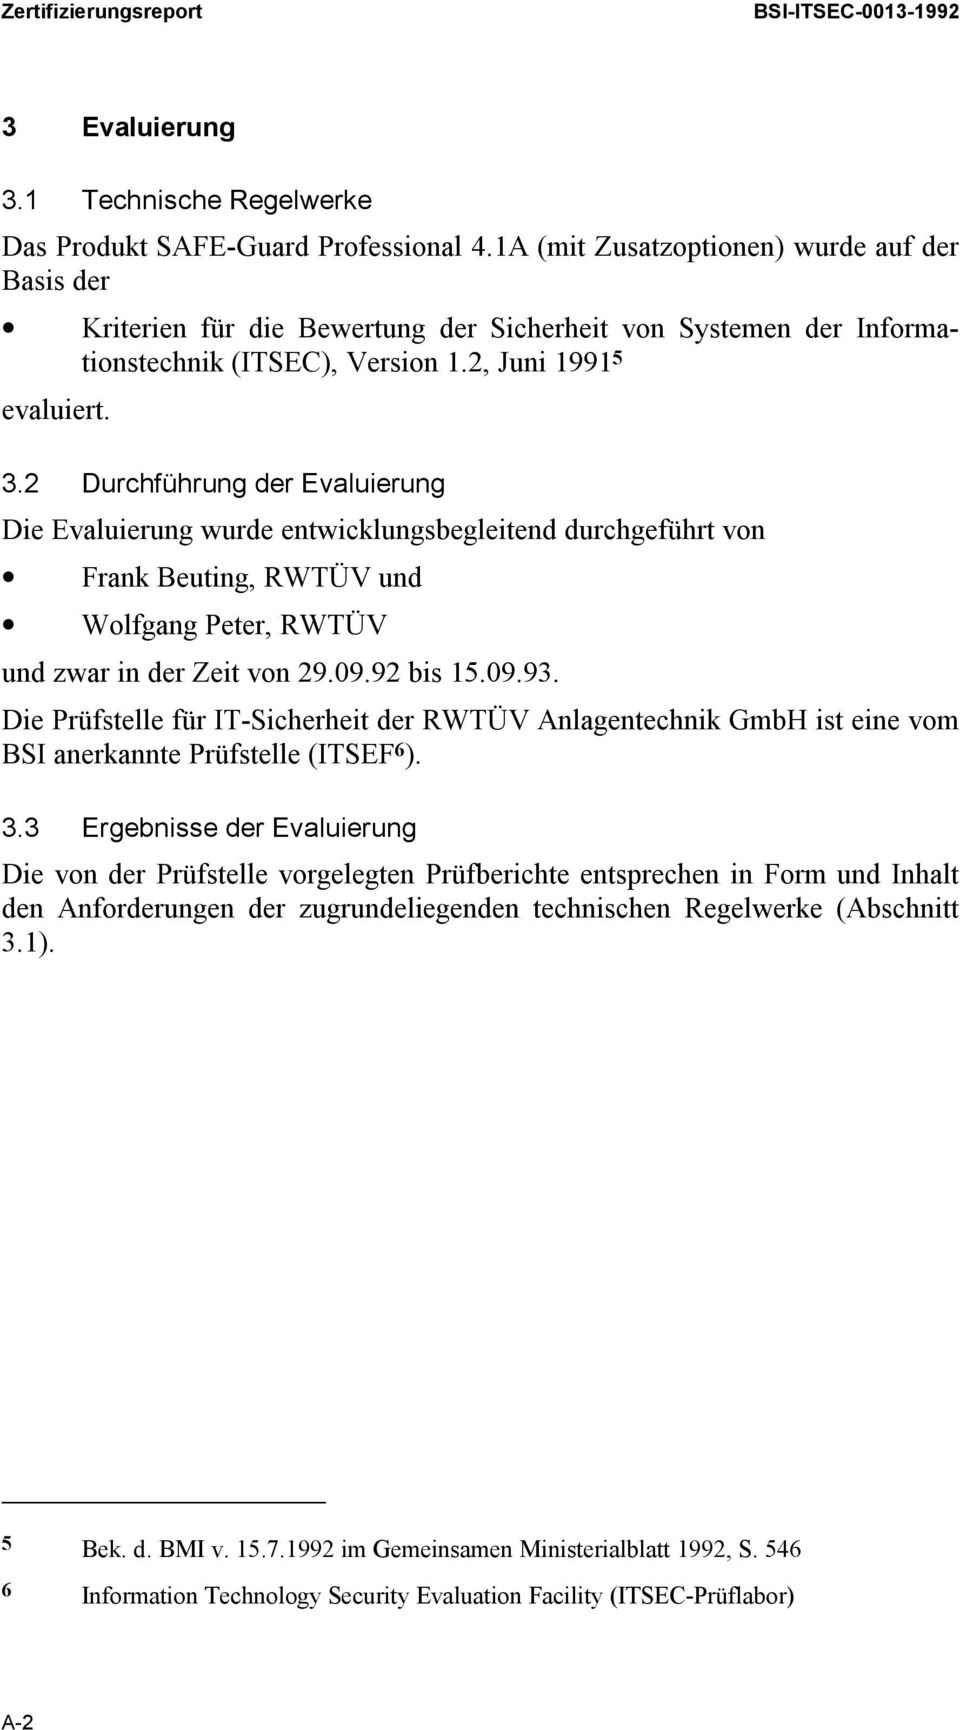 2 Durchführung der Evaluierung Die Evaluierung wurde entwicklungsbegleitend durchgeführt von Frank Beuting, RWTÜV und Wolfgang Peter, RWTÜV und zwar in der Zeit von 29.09.92 bis 15.09.93.